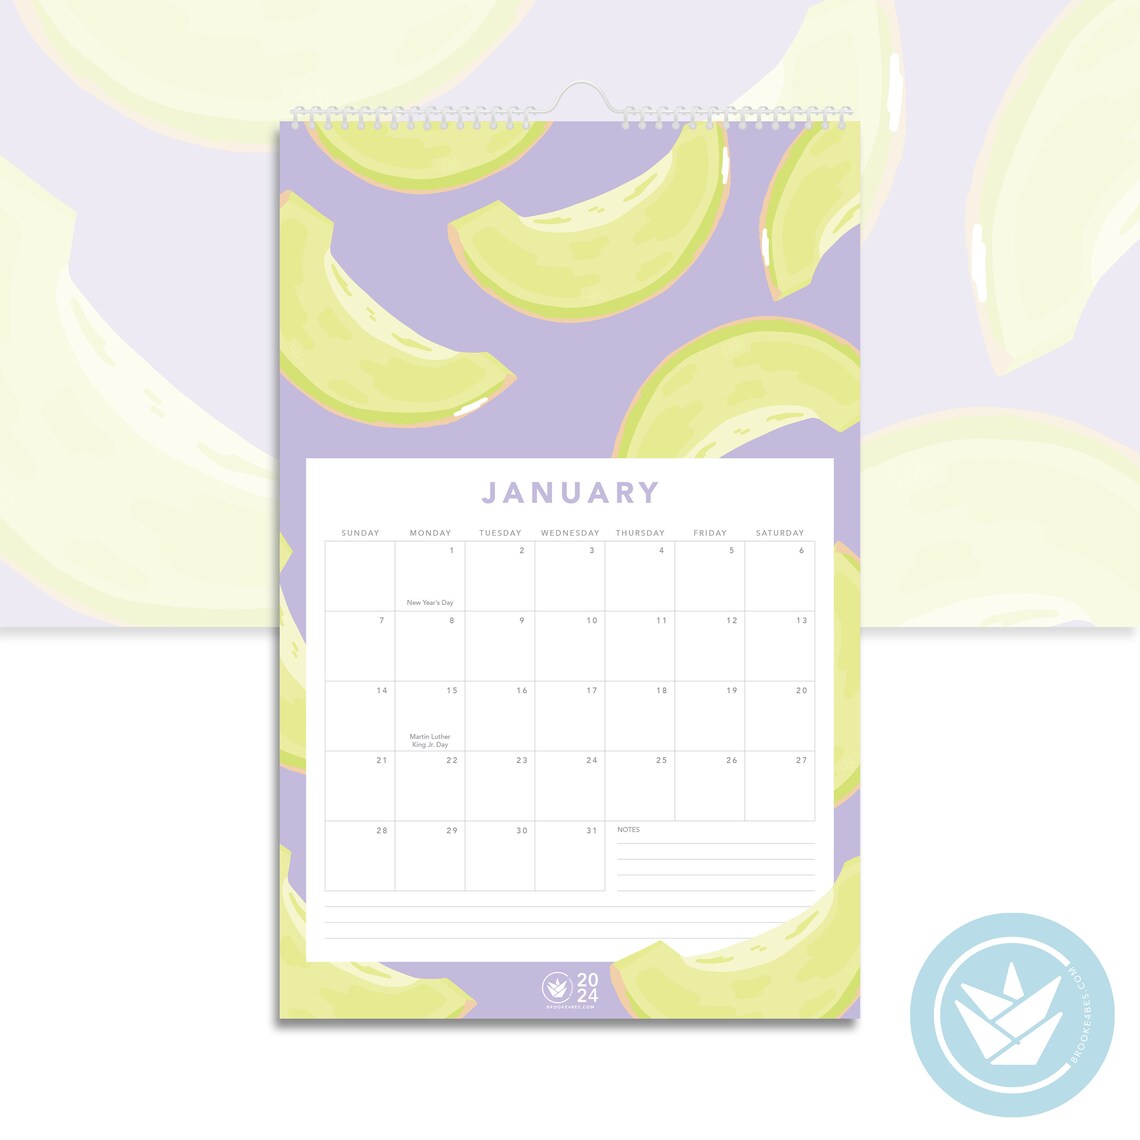 Fruits 2024 Calendar - Brooke 4bes